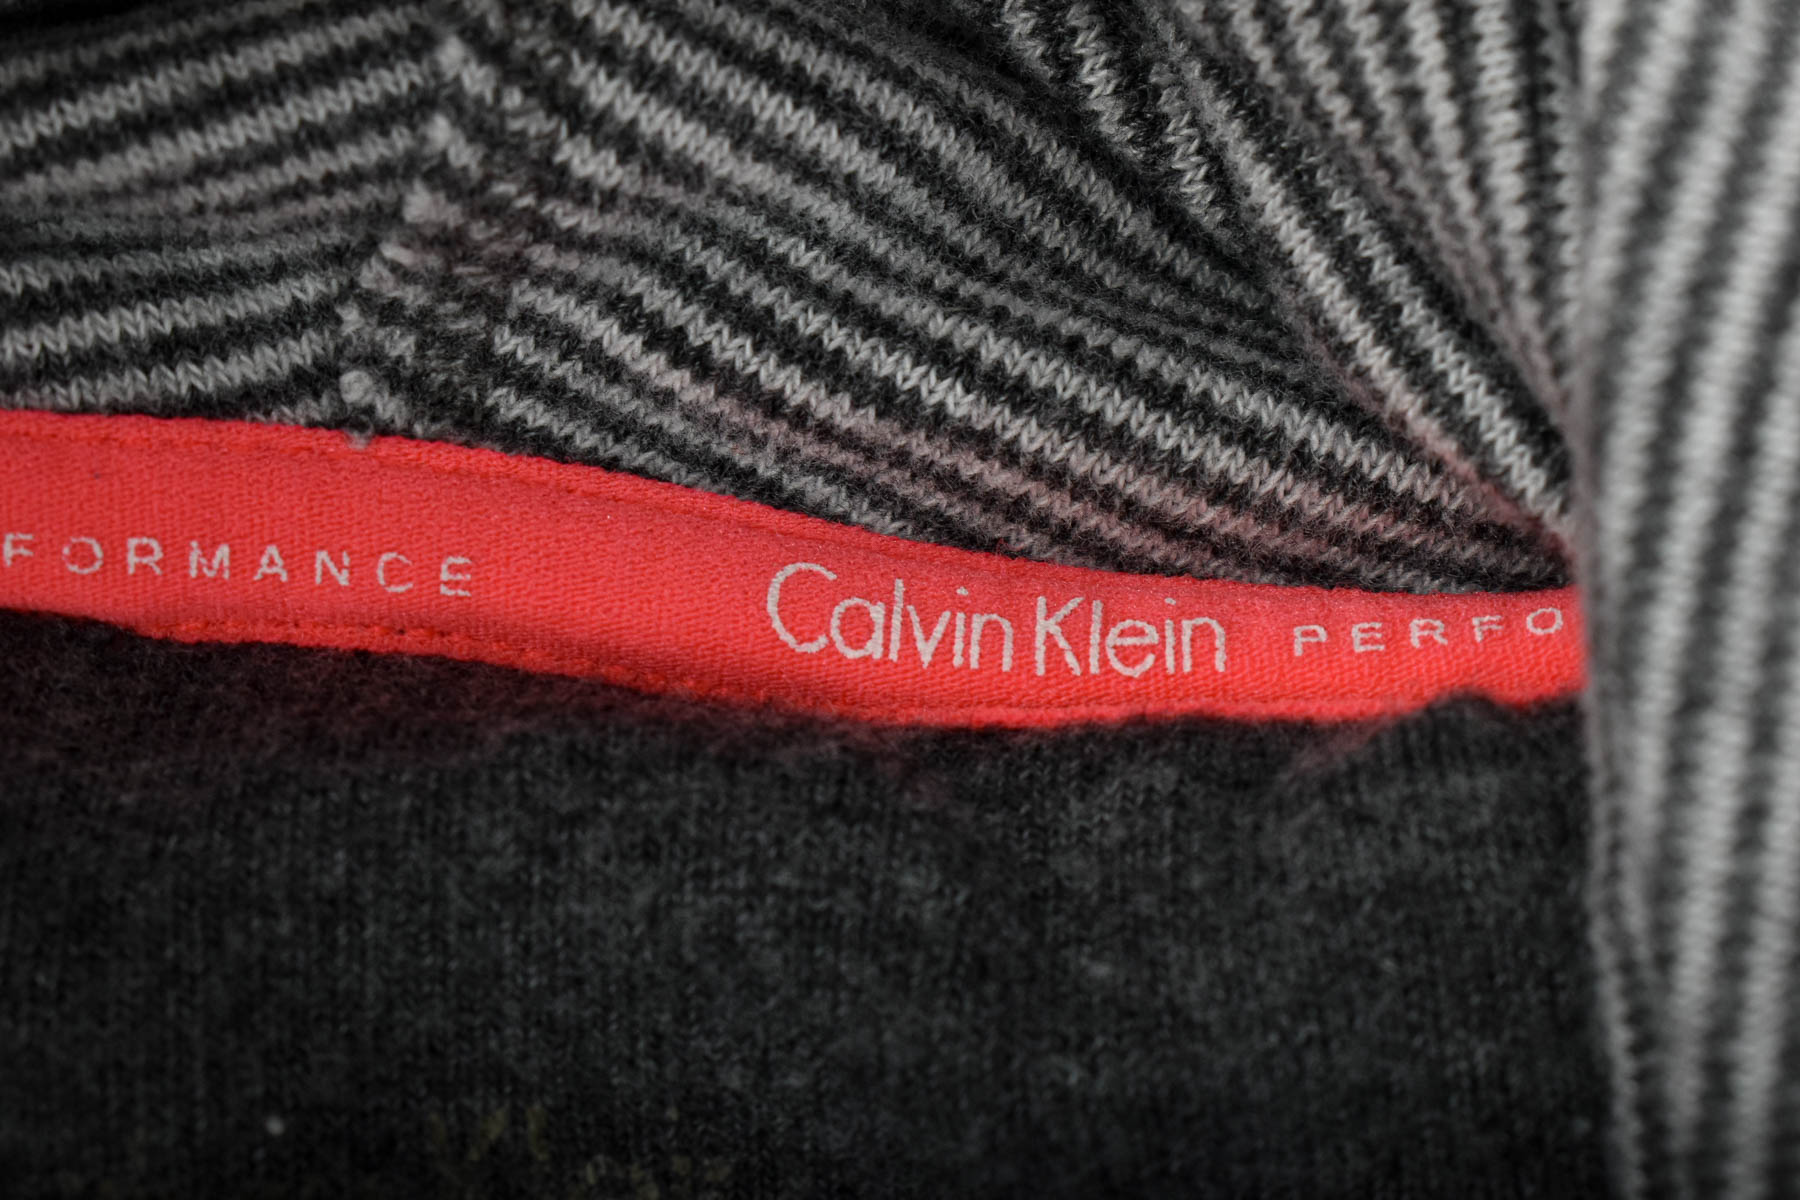 Bluza de damă - Calvin Klein PERFORMANCE - 2